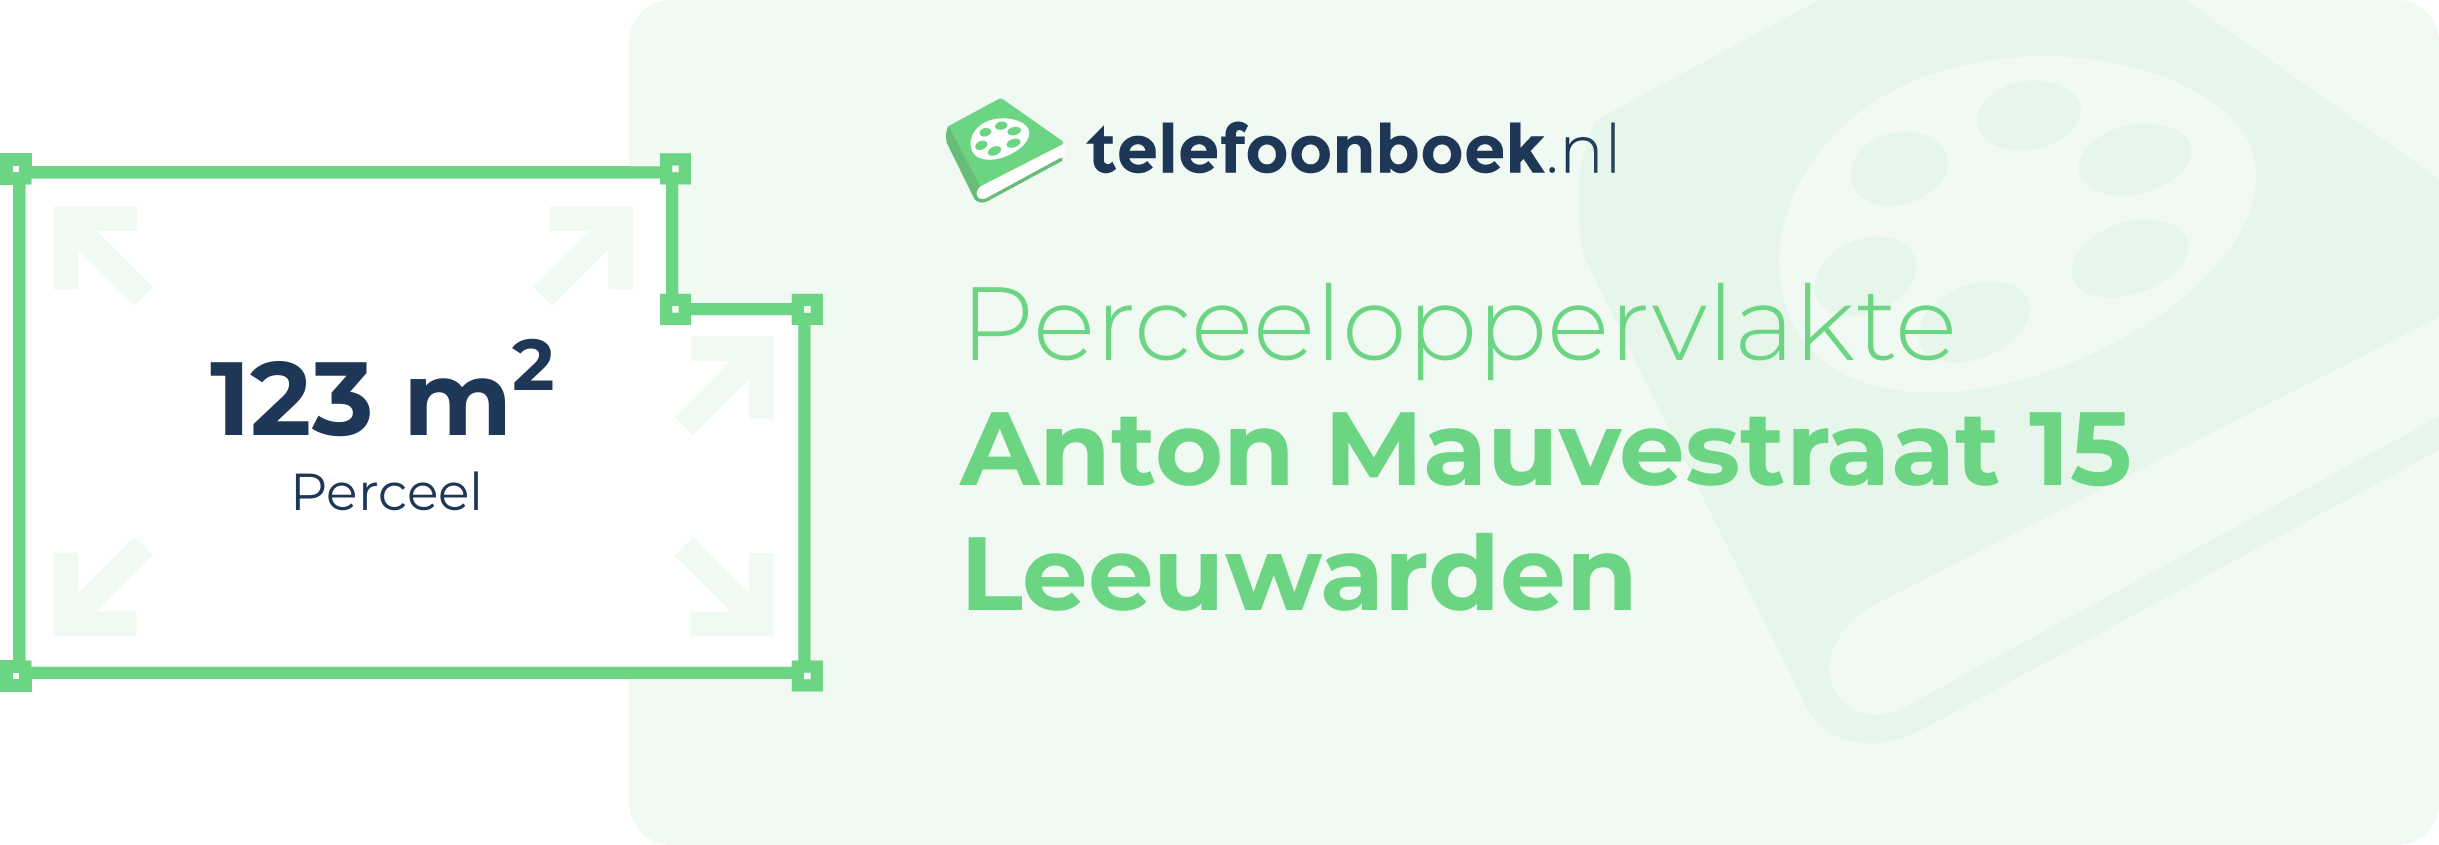 Perceeloppervlakte Anton Mauvestraat 15 Leeuwarden